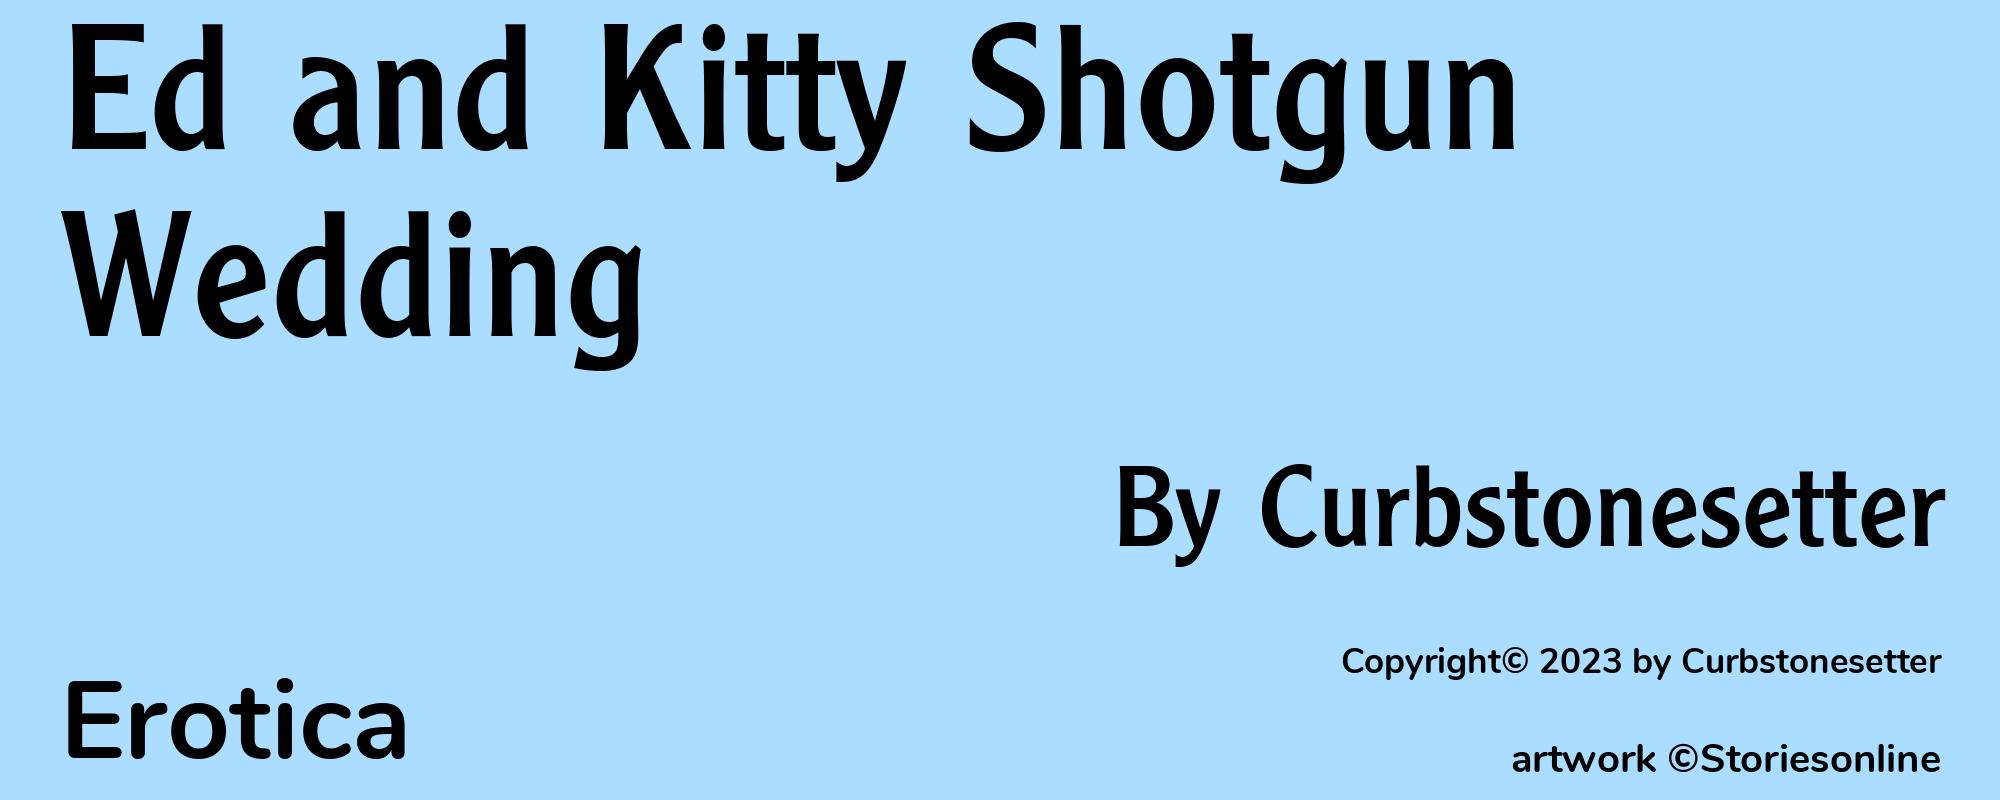 Ed and Kitty Shotgun Wedding - Cover